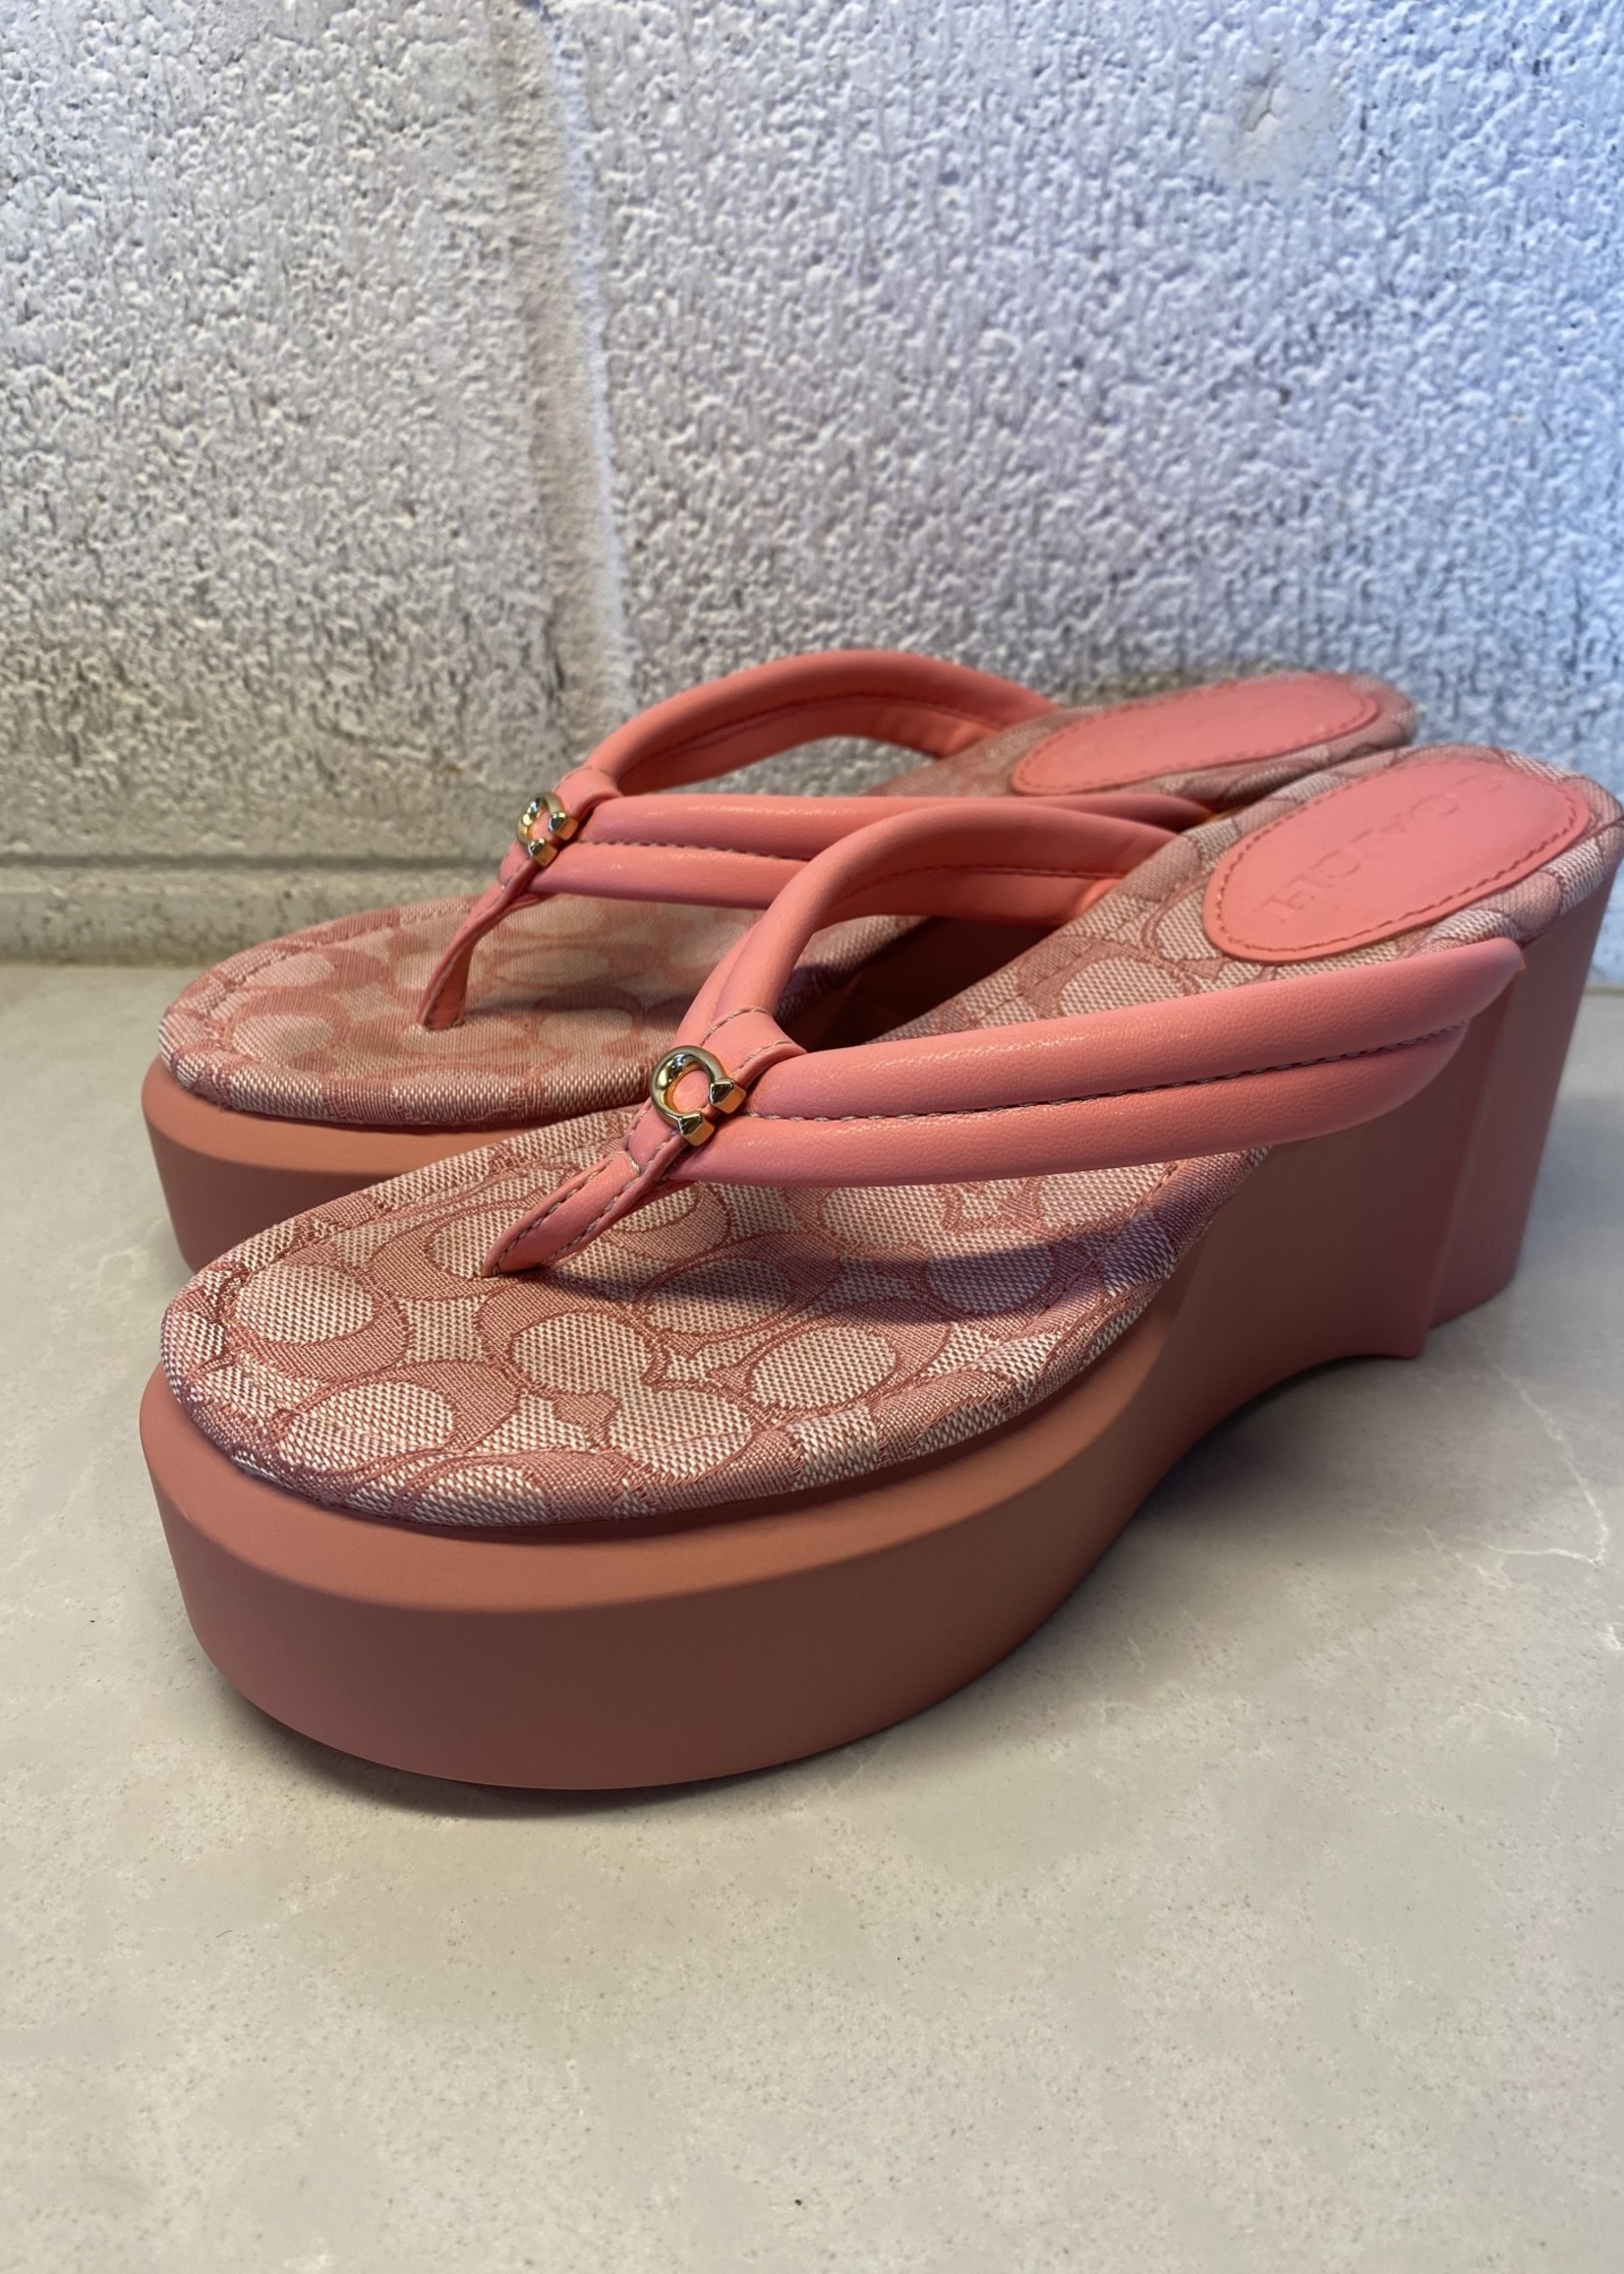 Coach New Pink Platform Sandals 7